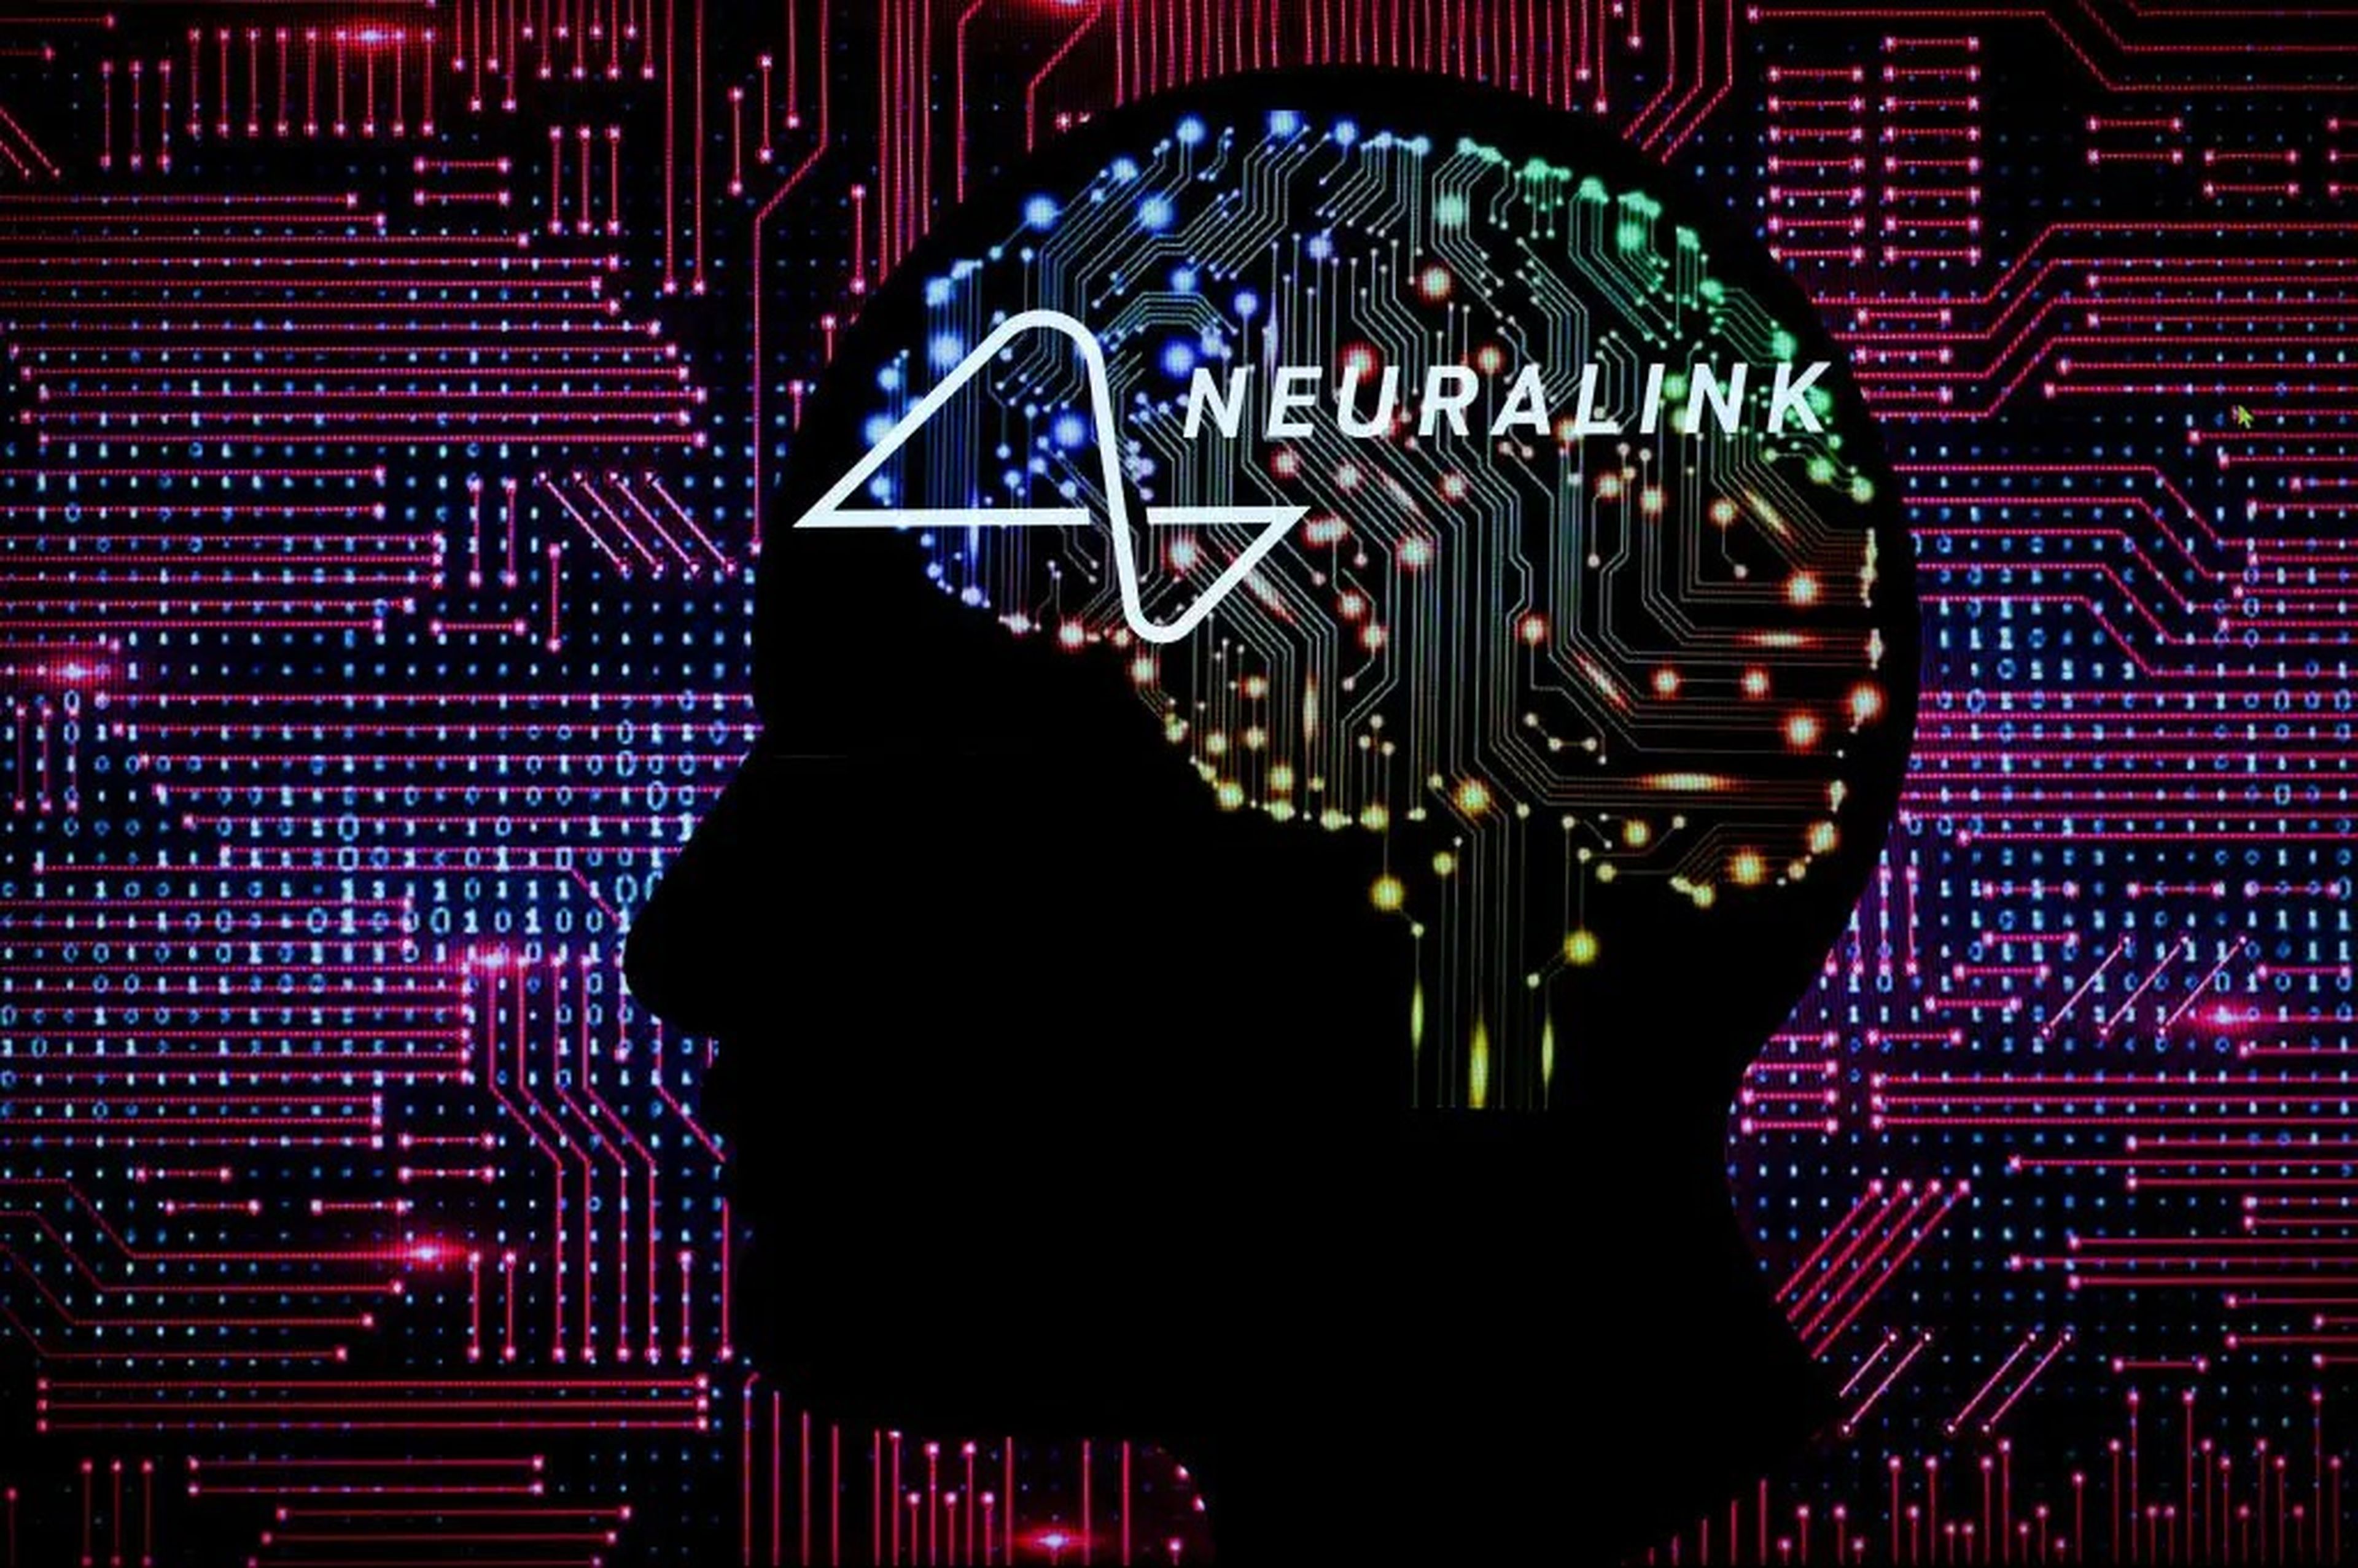 Una ilustración de Neuralink, la firma de implantes cerebrales propiedad de Elon Musk.